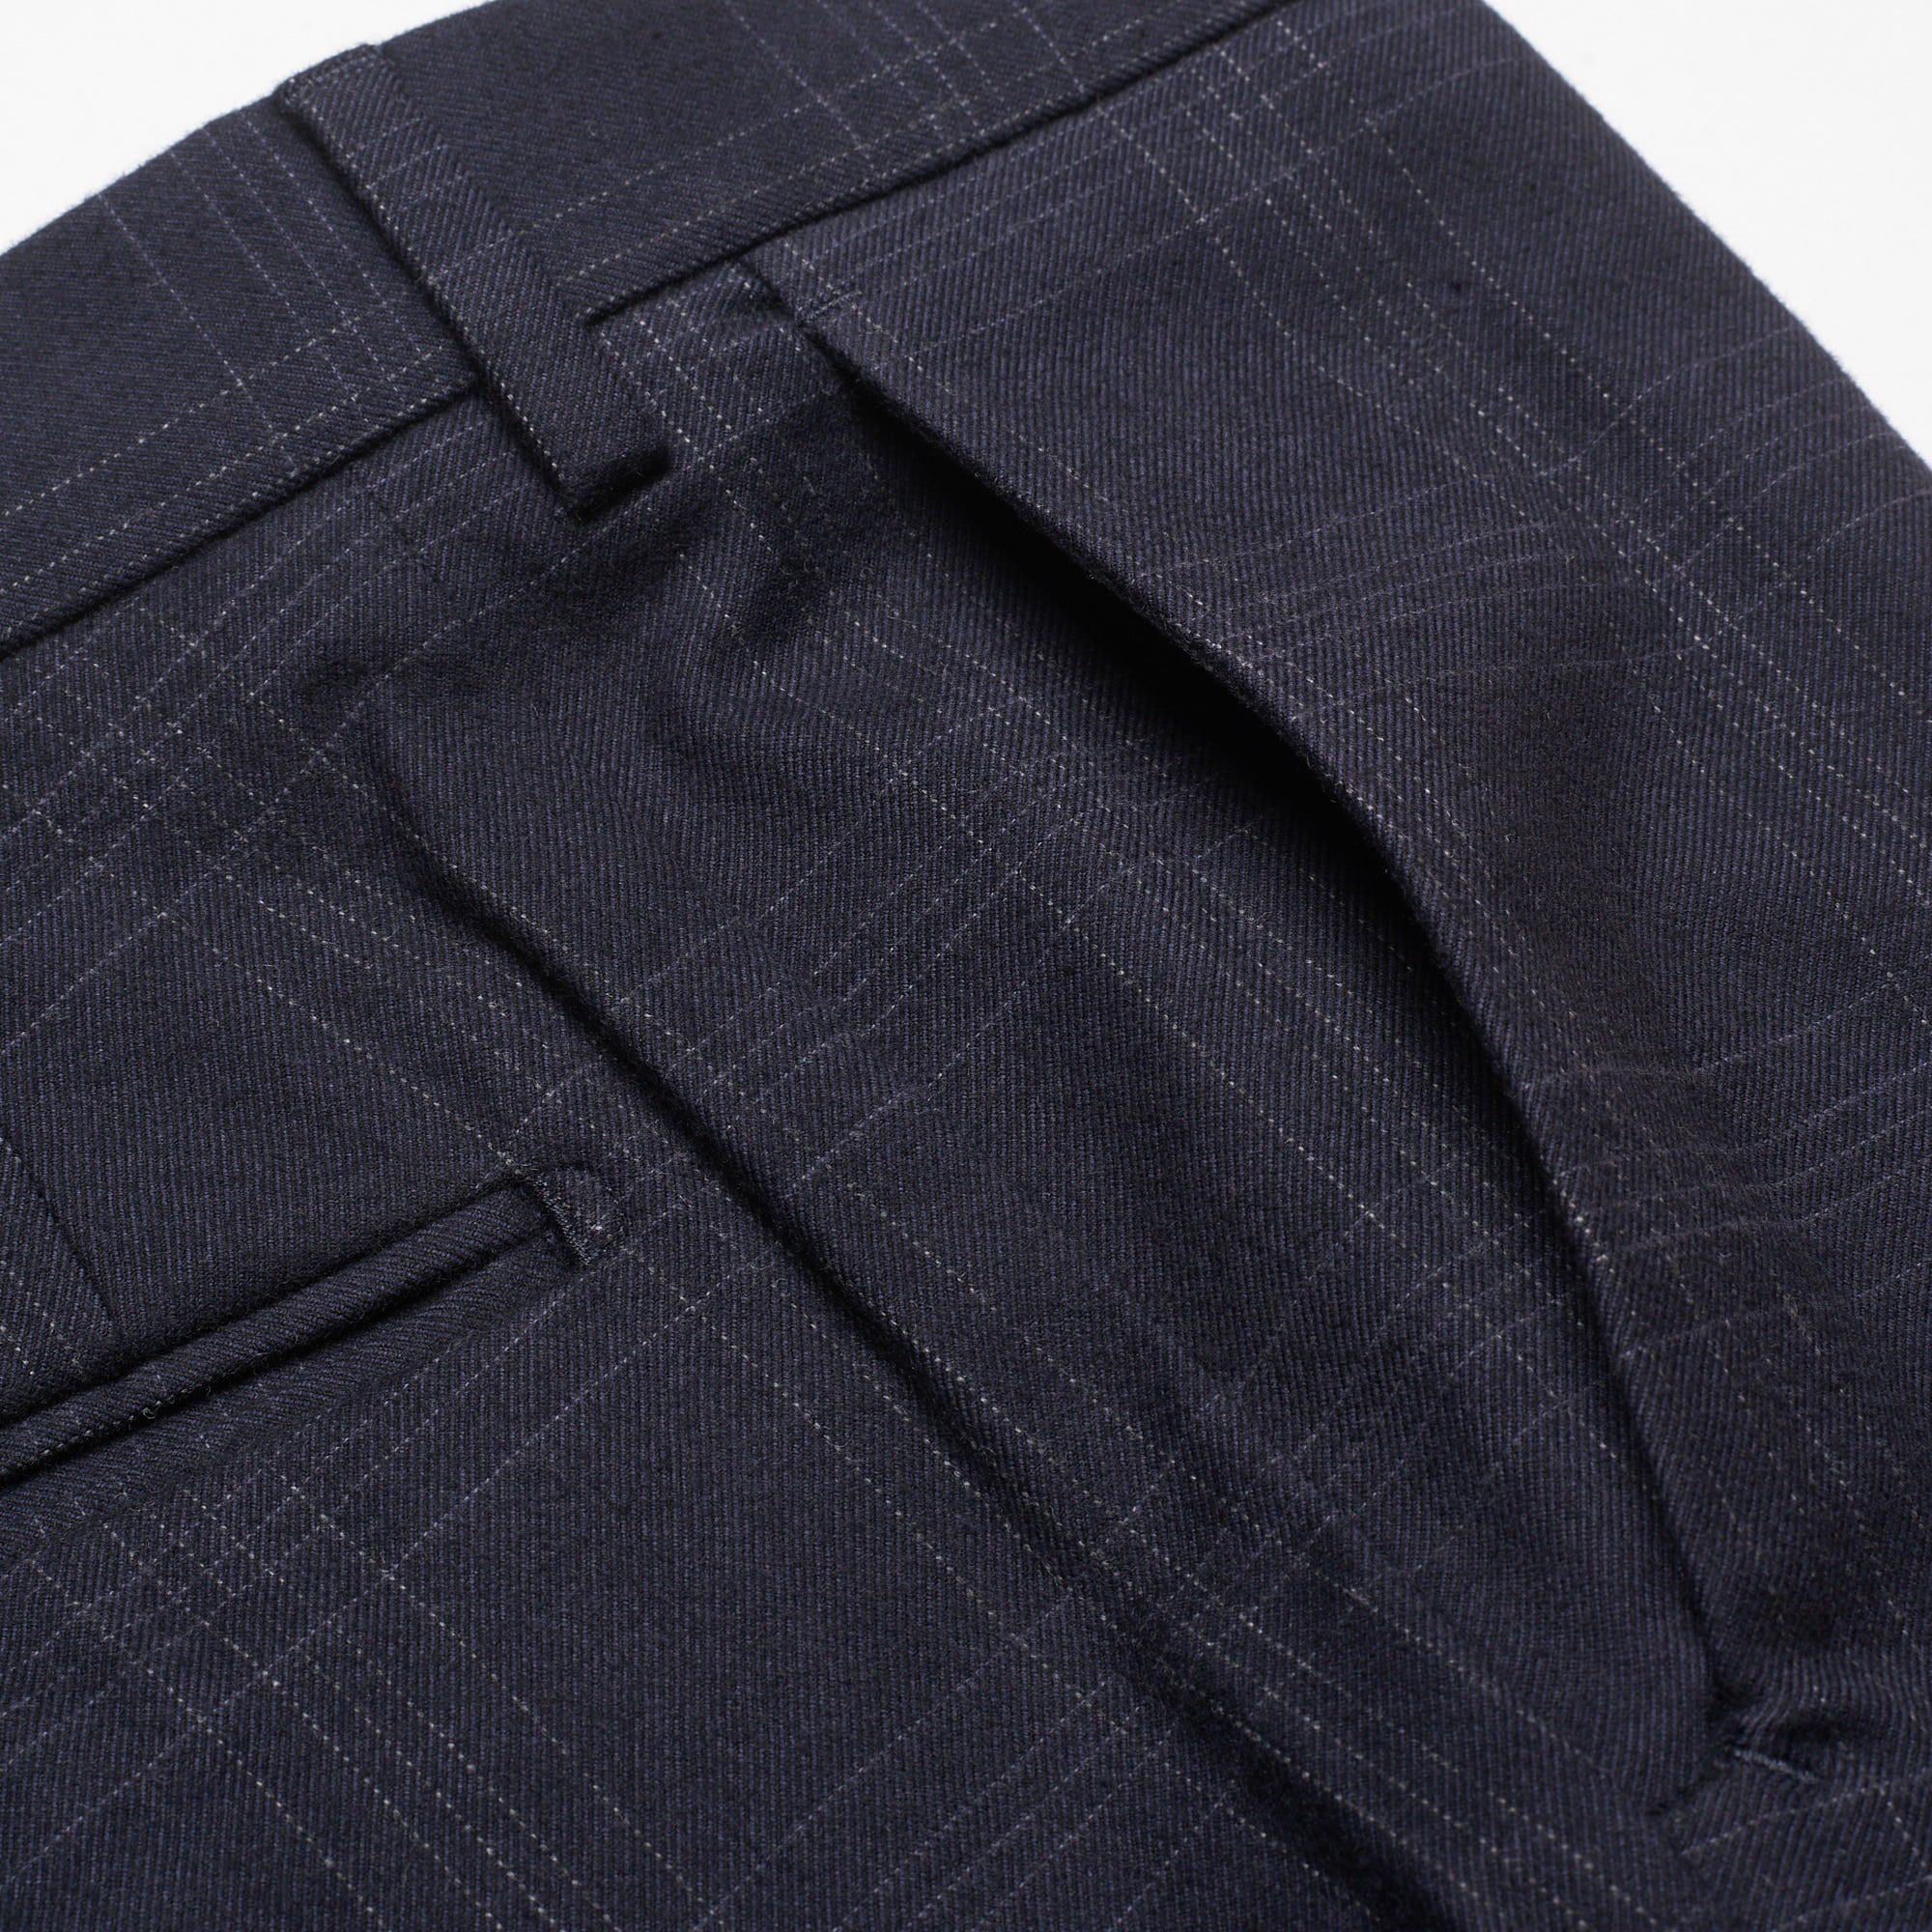 INCOTEX (Slowear) Blue Plaid Cotton Twill Pants EU 46 NEW US 30 Slim Fit INCOTEX